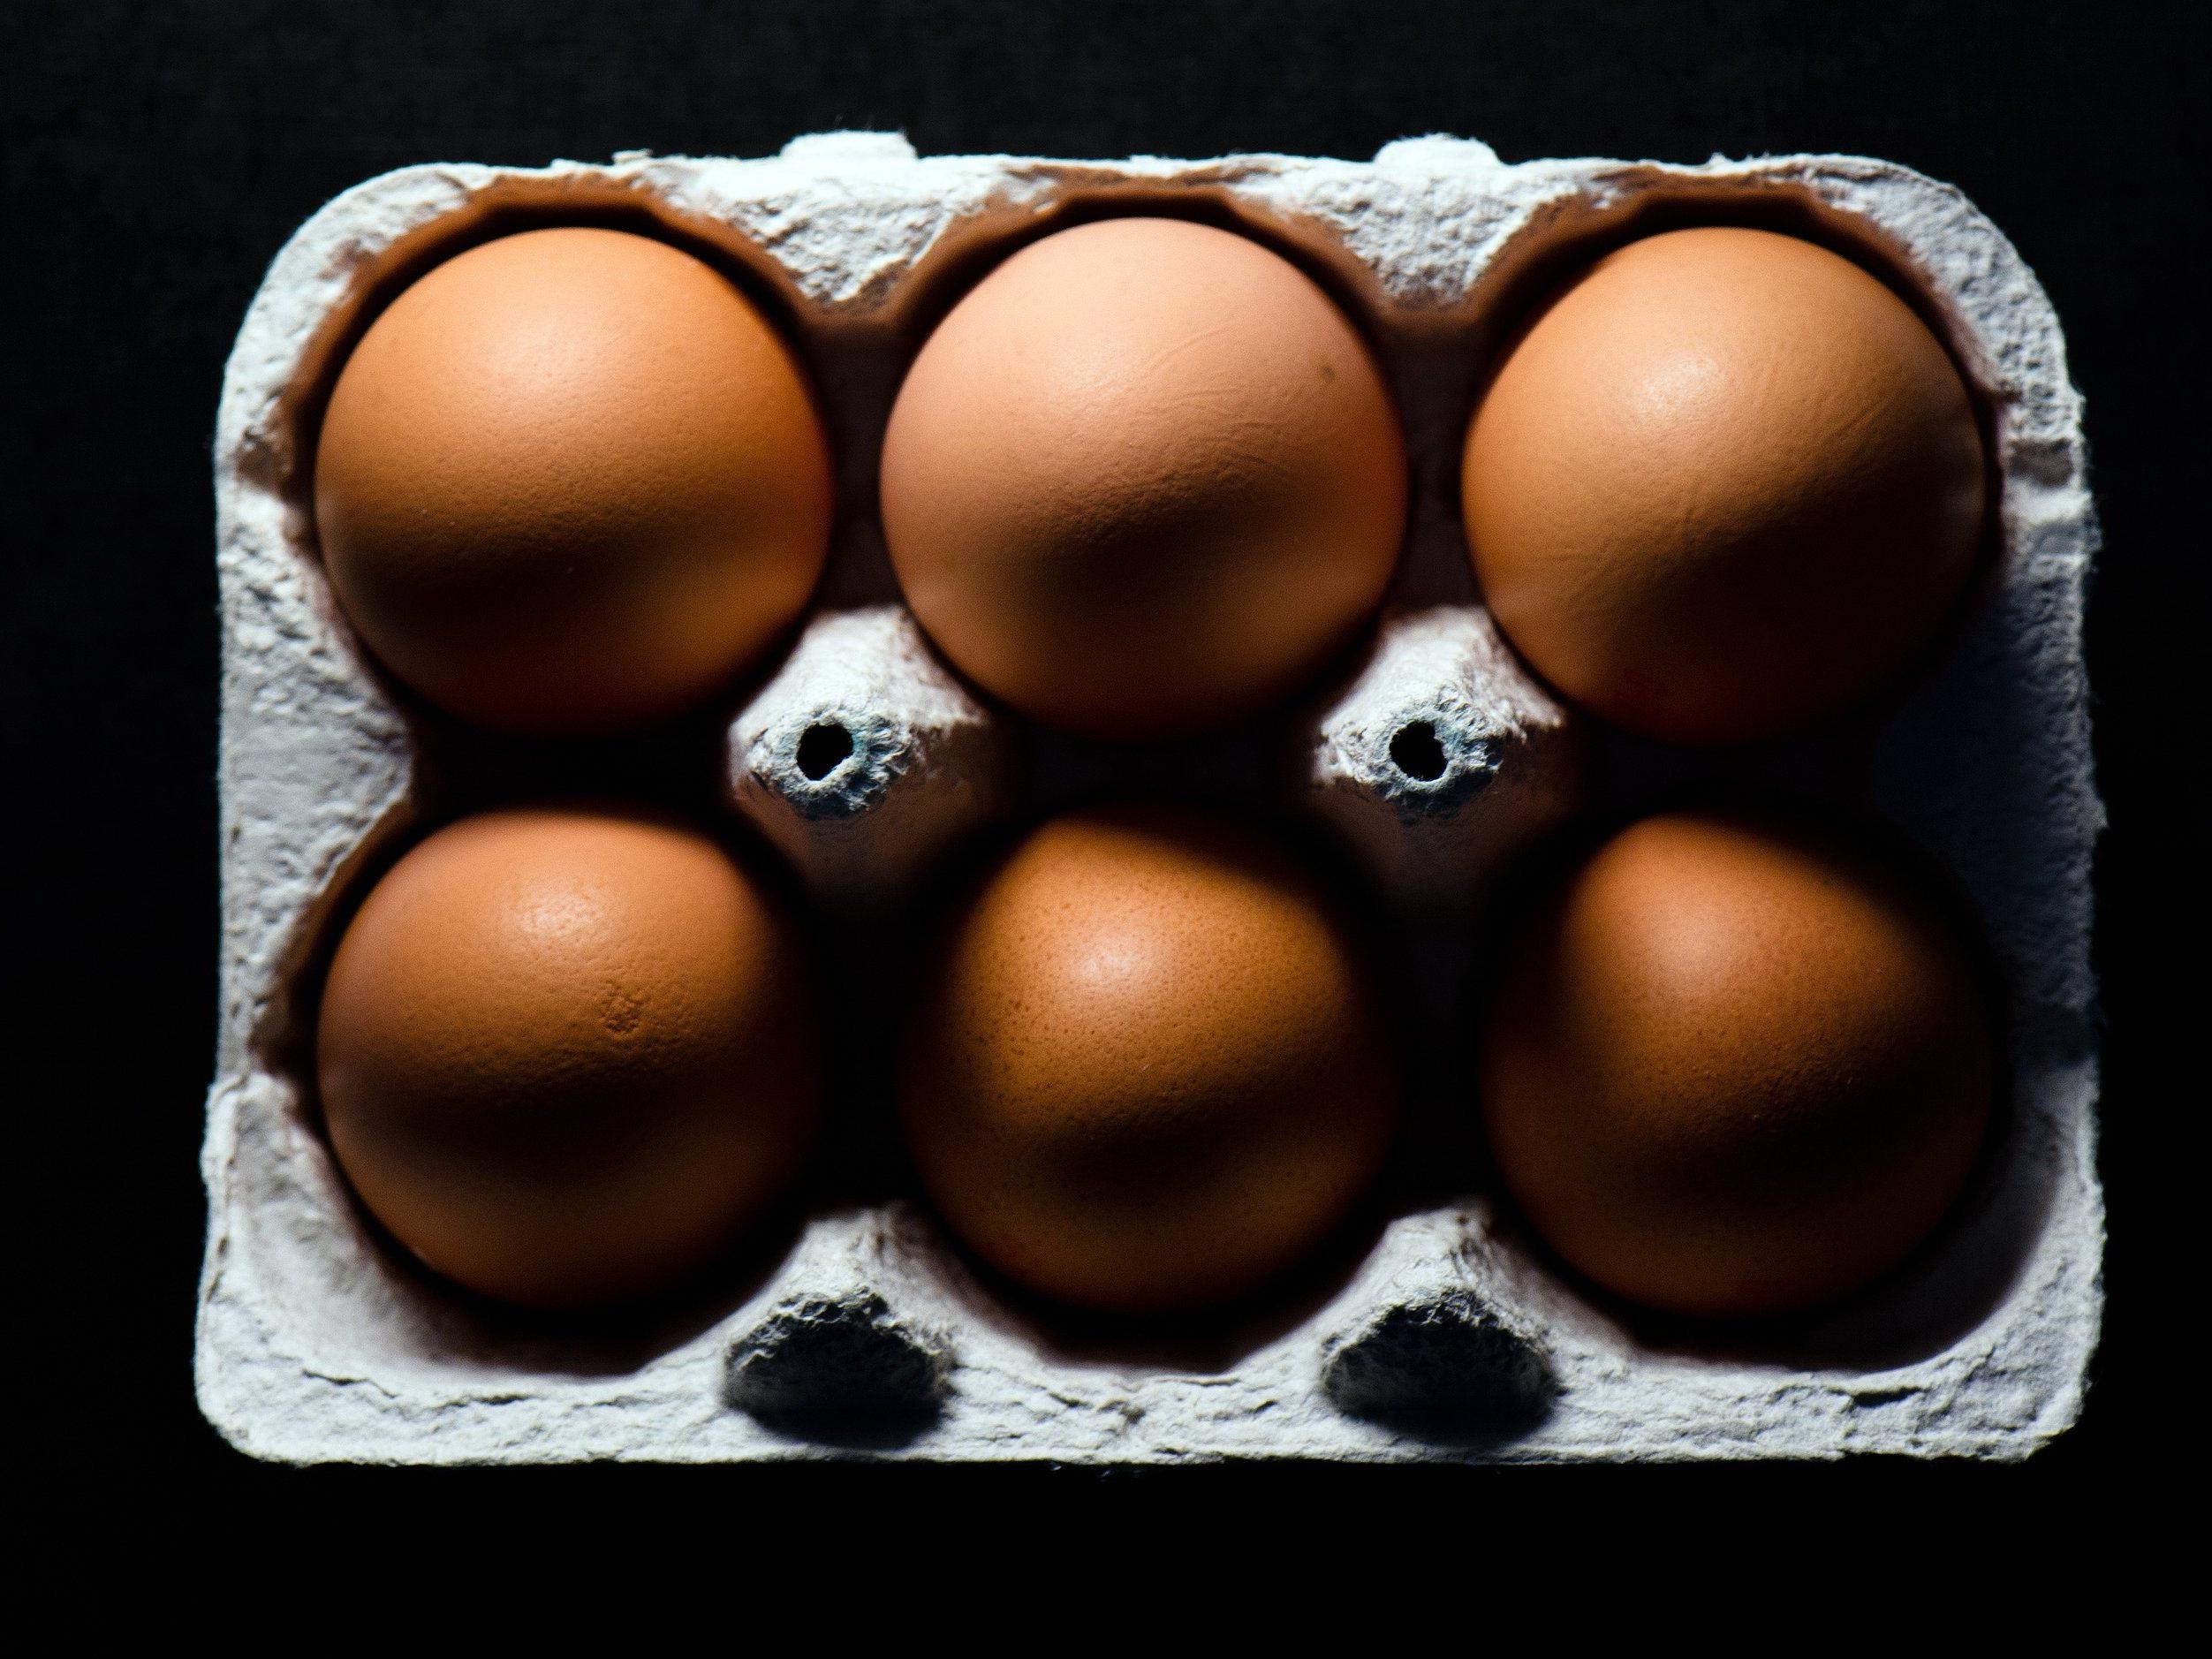 Spar ruft weitere Eier wegen Salmonellen-Verdachts zurück.